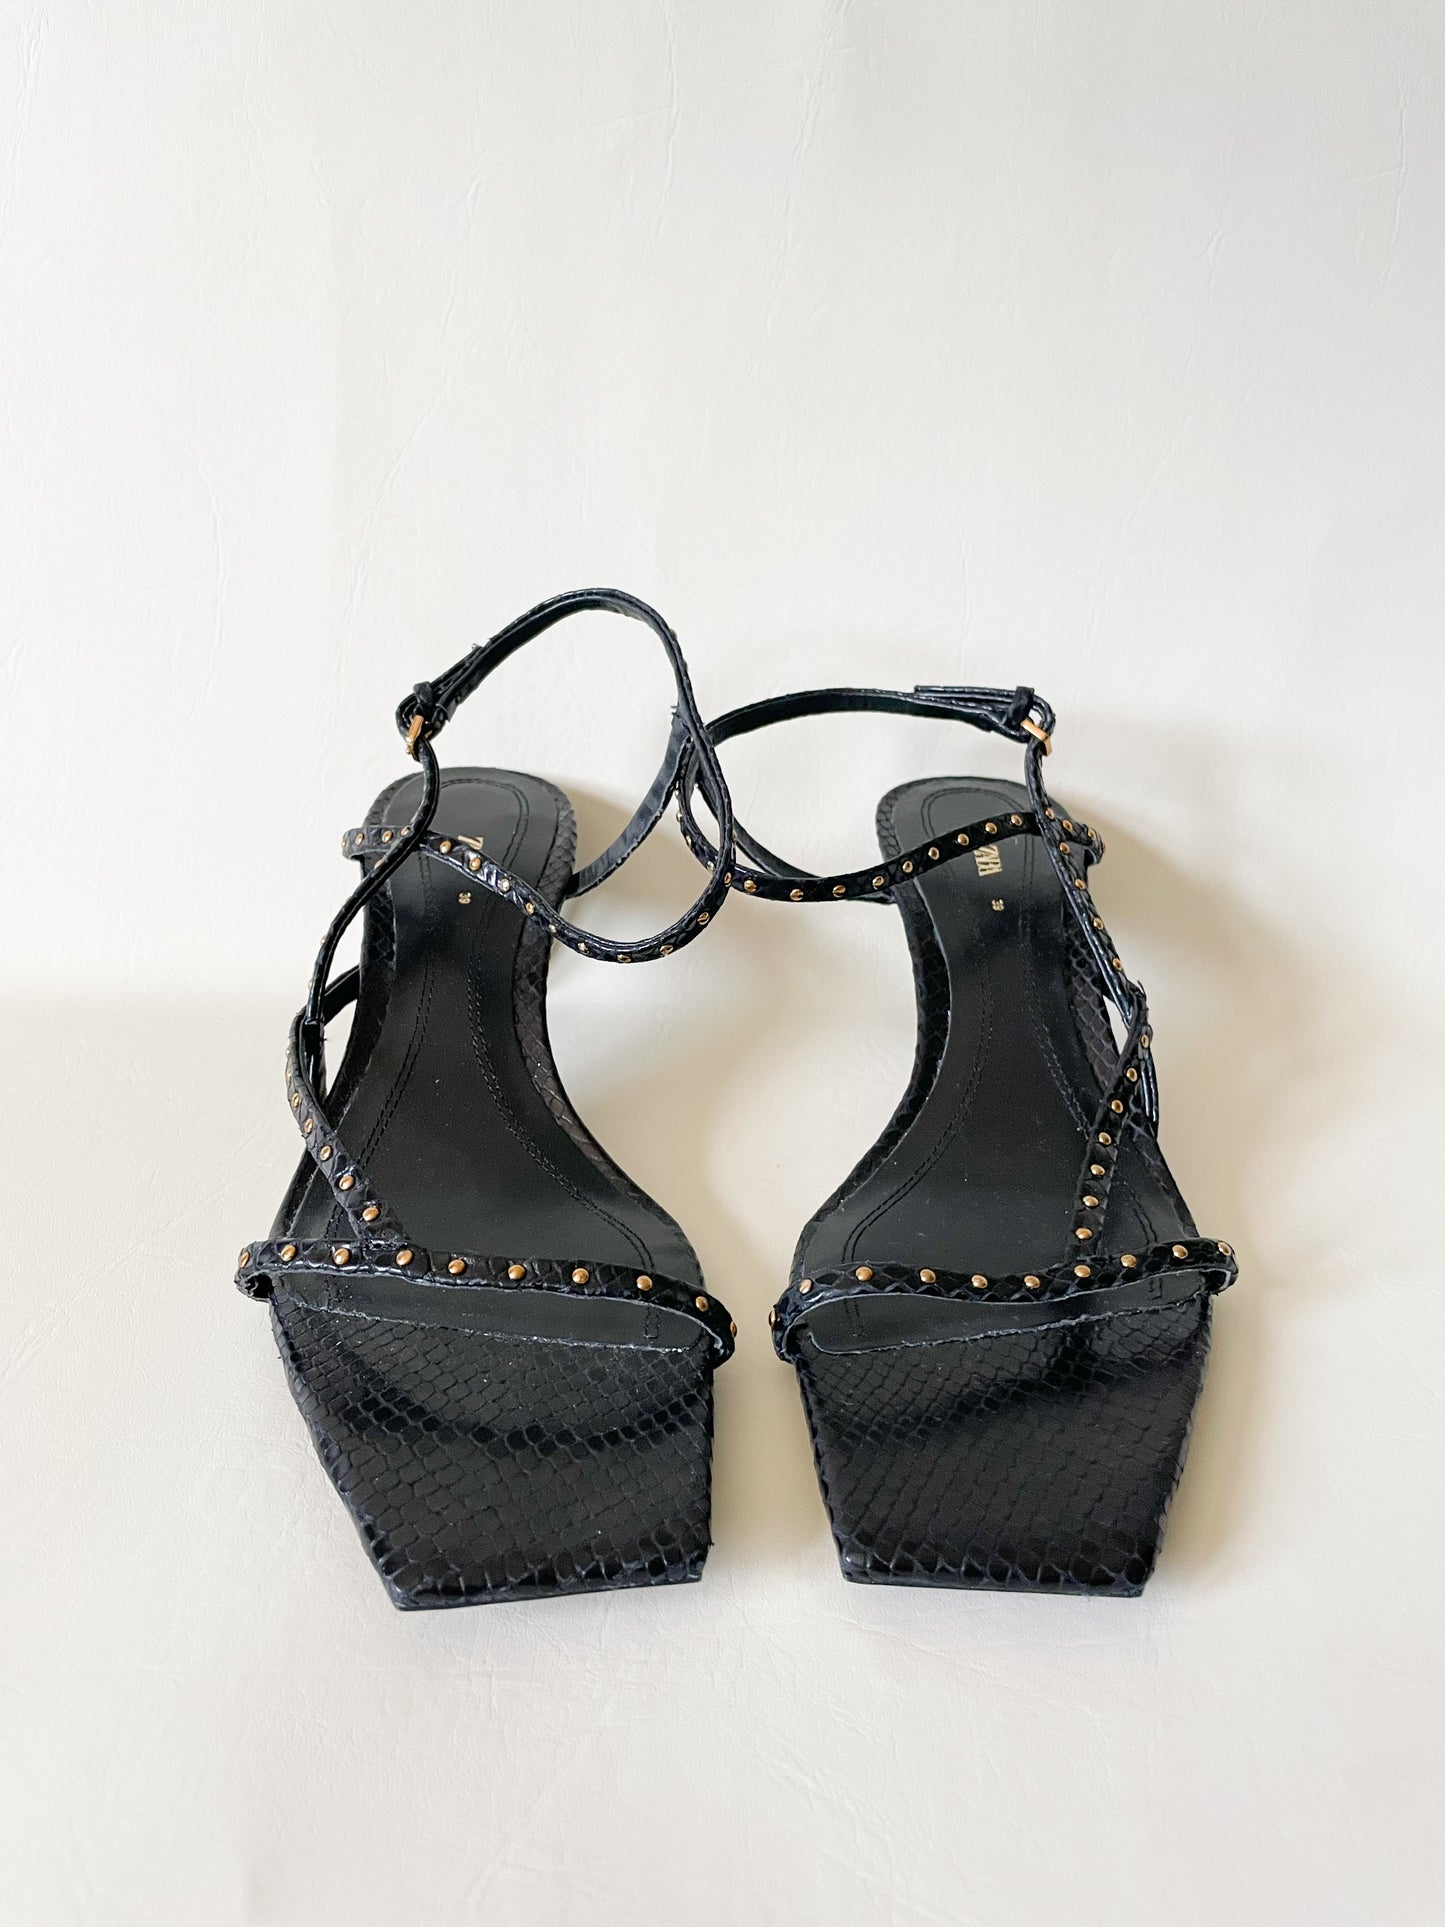 ZARA Heeled Toe Post Sandals Kitten Heel NWOT - Size 39 (US 8)